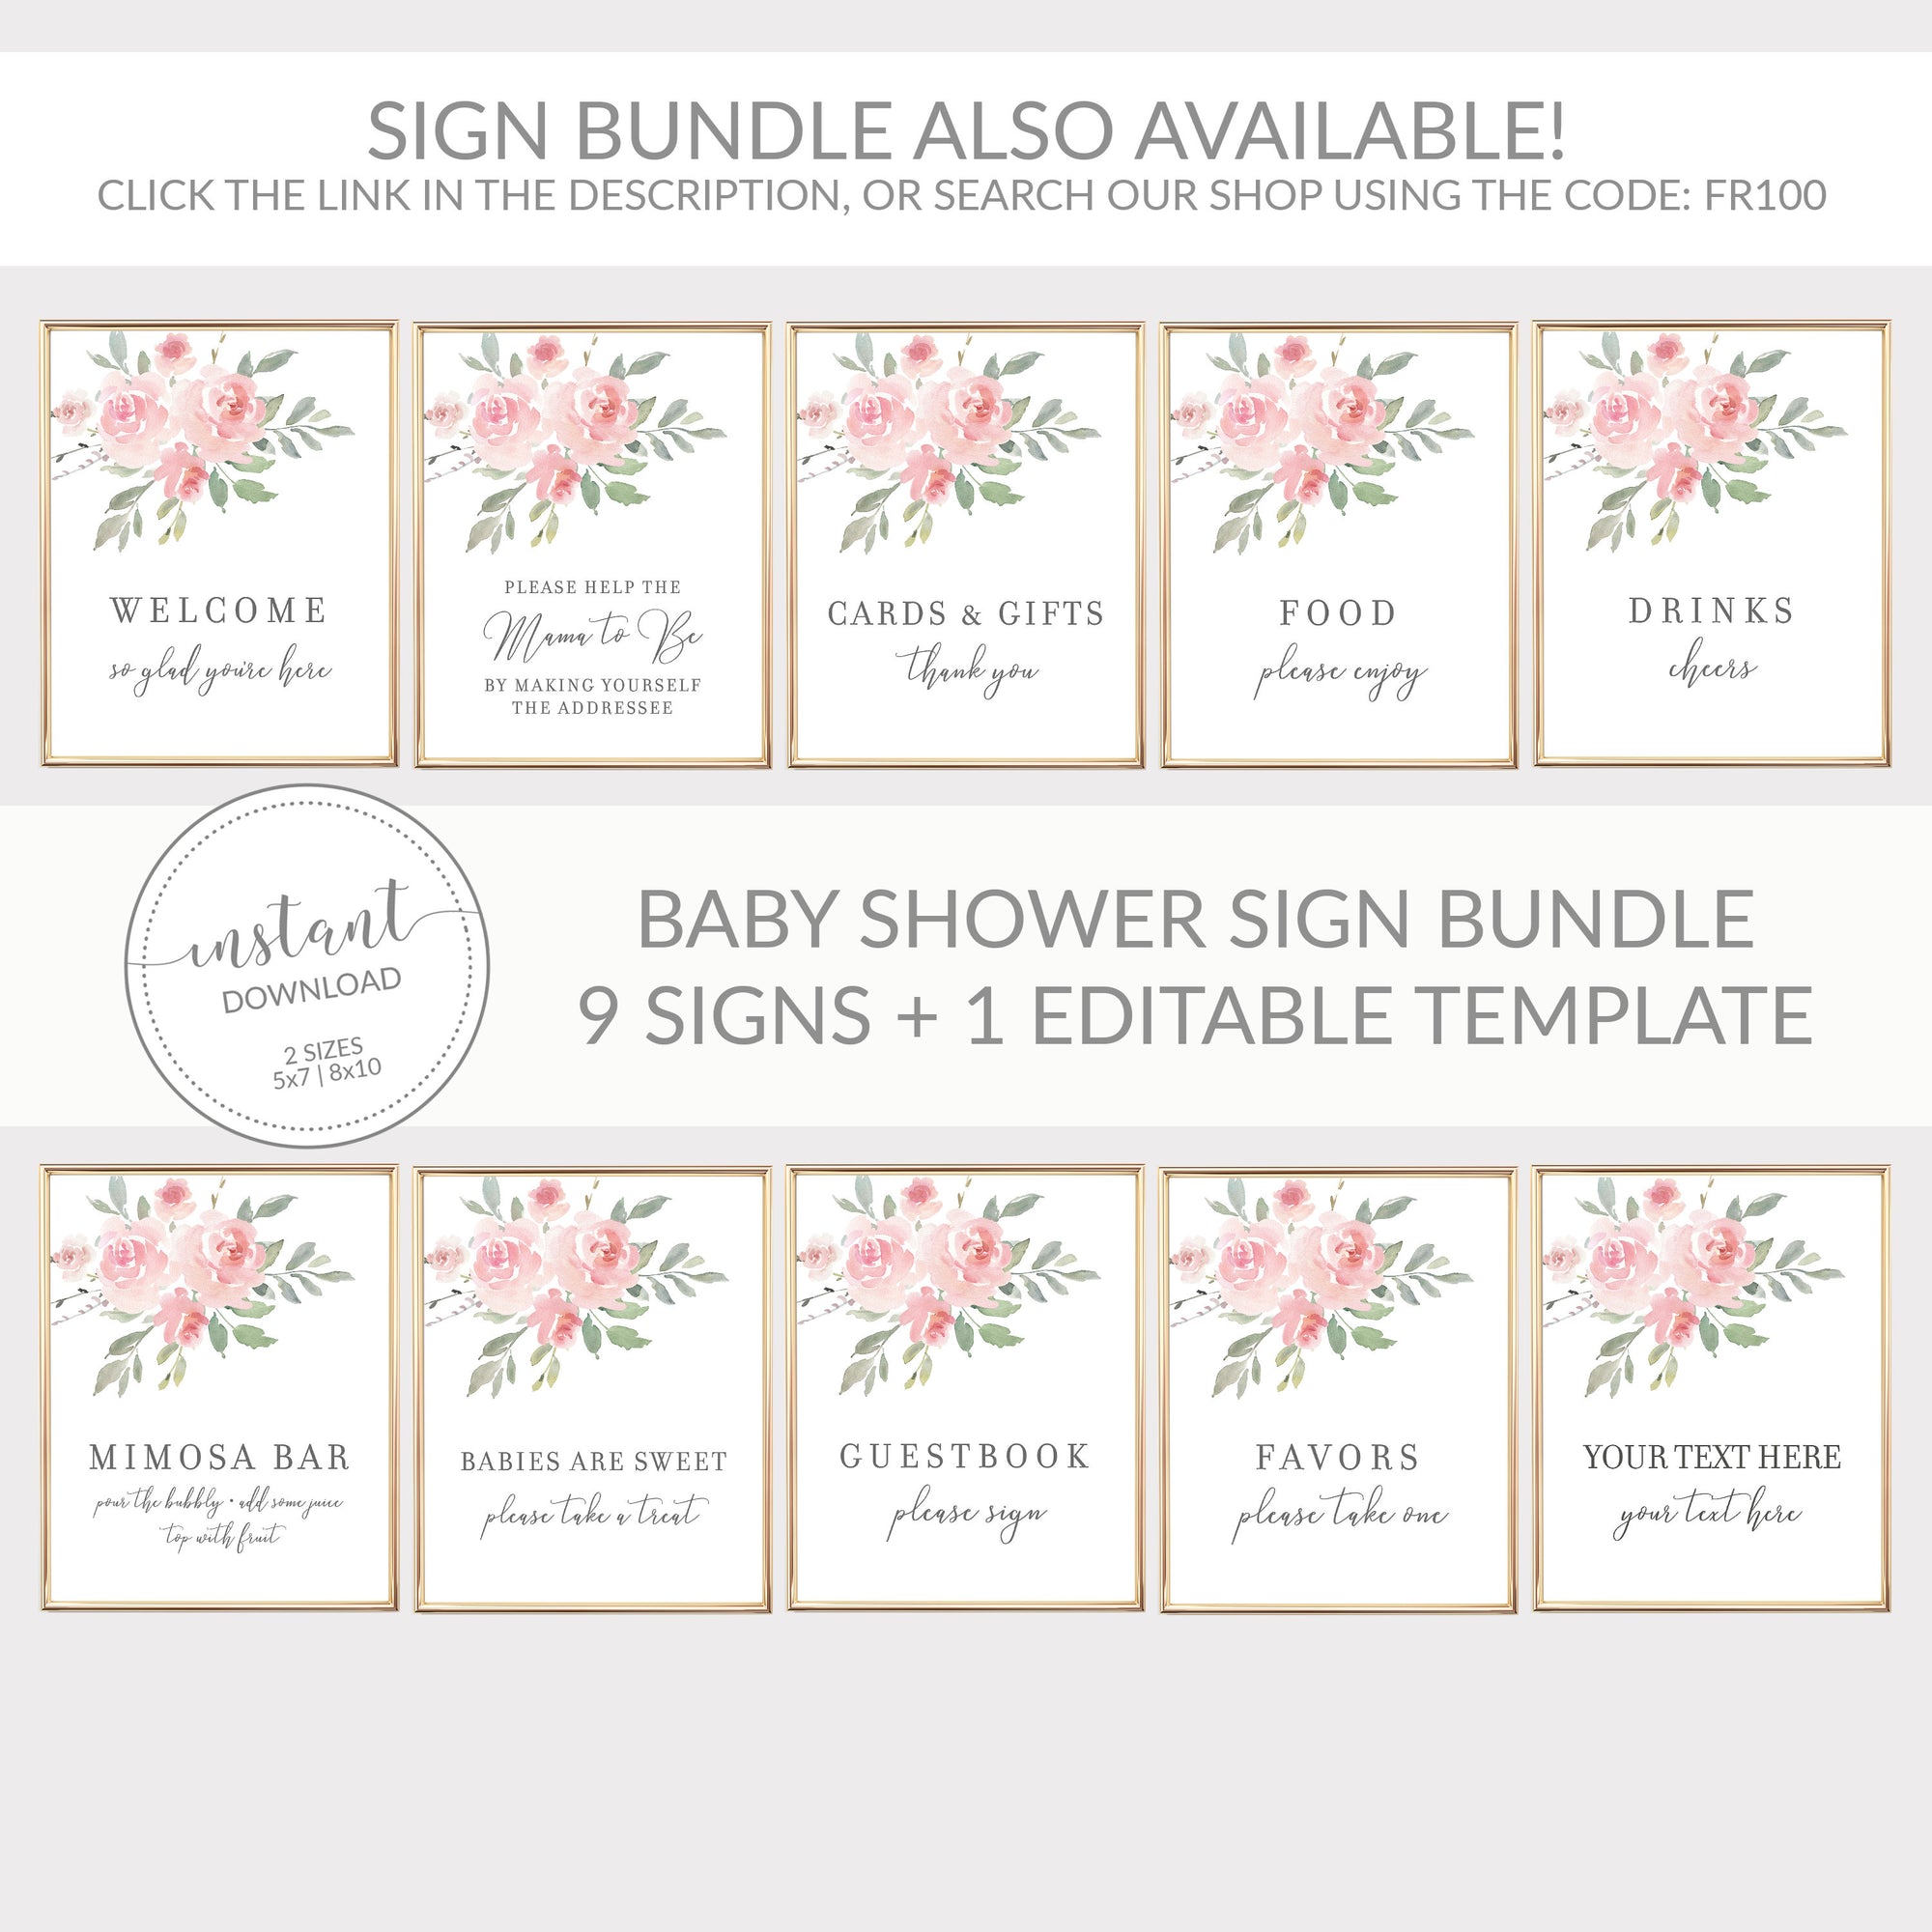 Baby in Bloom Baby Shower Favors Girl, Scrunchie Hair Tie Favors, Unique Baby Shower Favors, Pink Floral Girl Baby Shower Favors - FR100